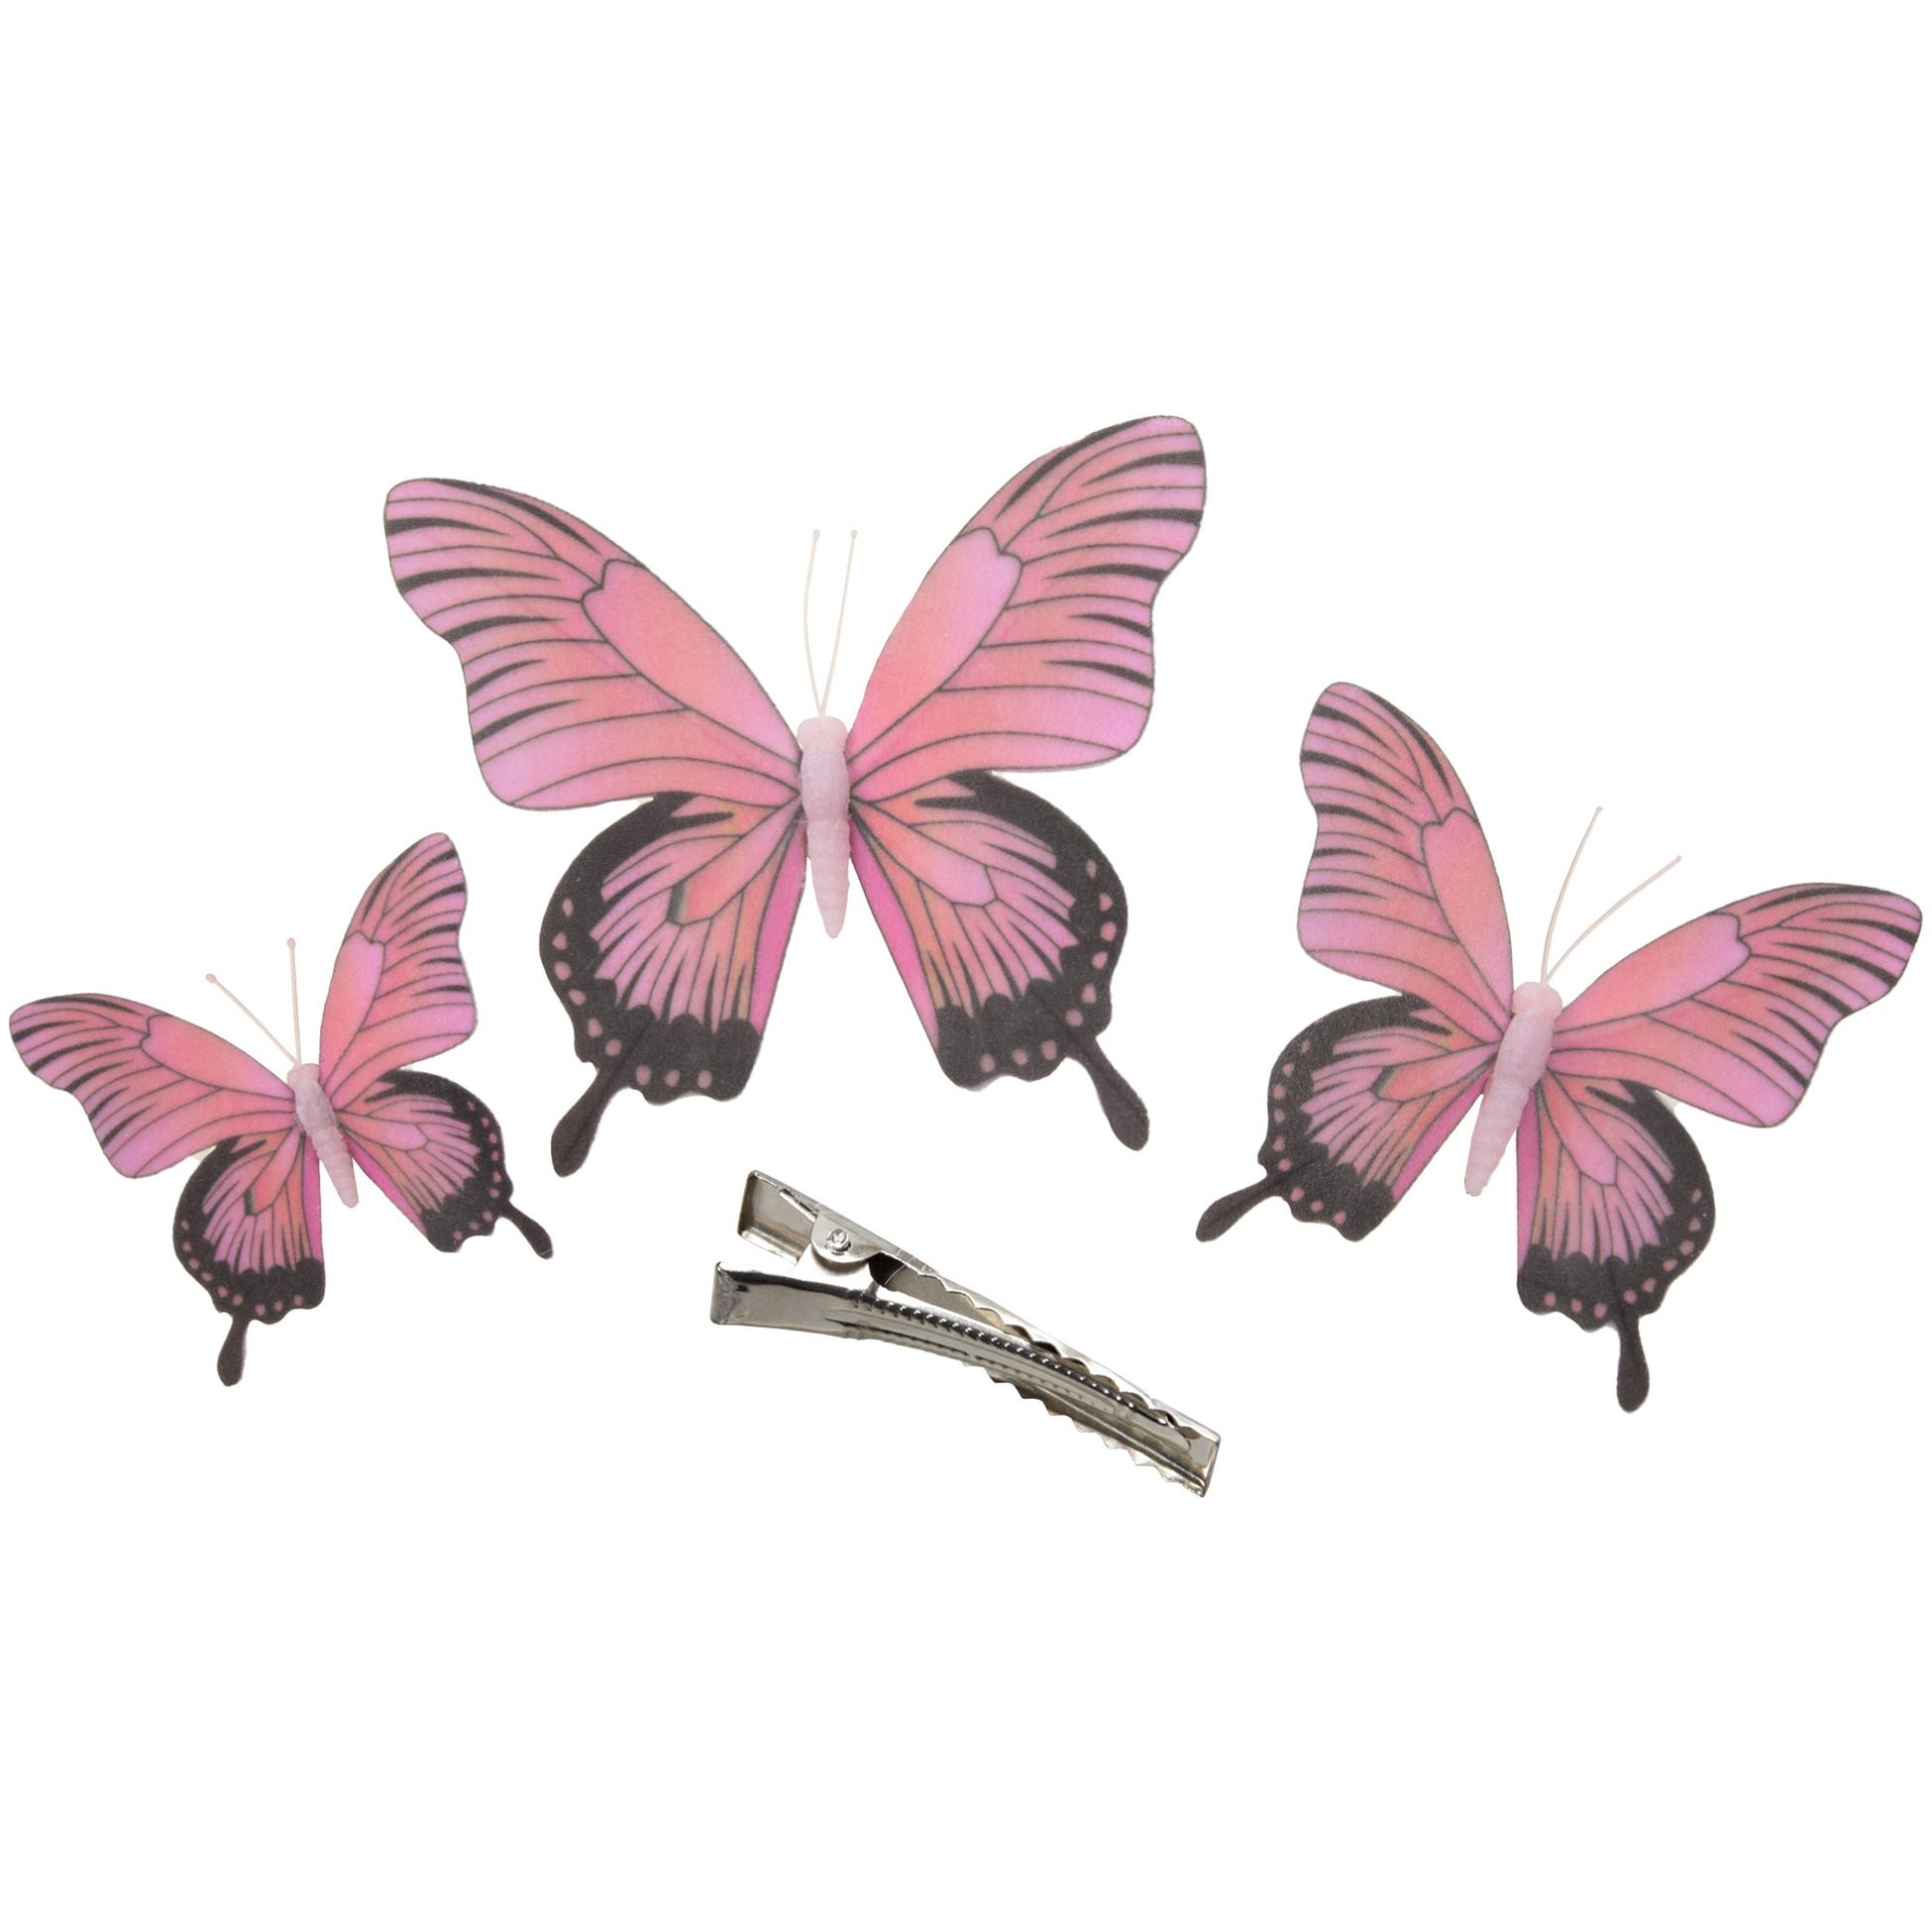 3x stuks decoratie vlinders op clip roze 3 formaten 12 16 20 cm